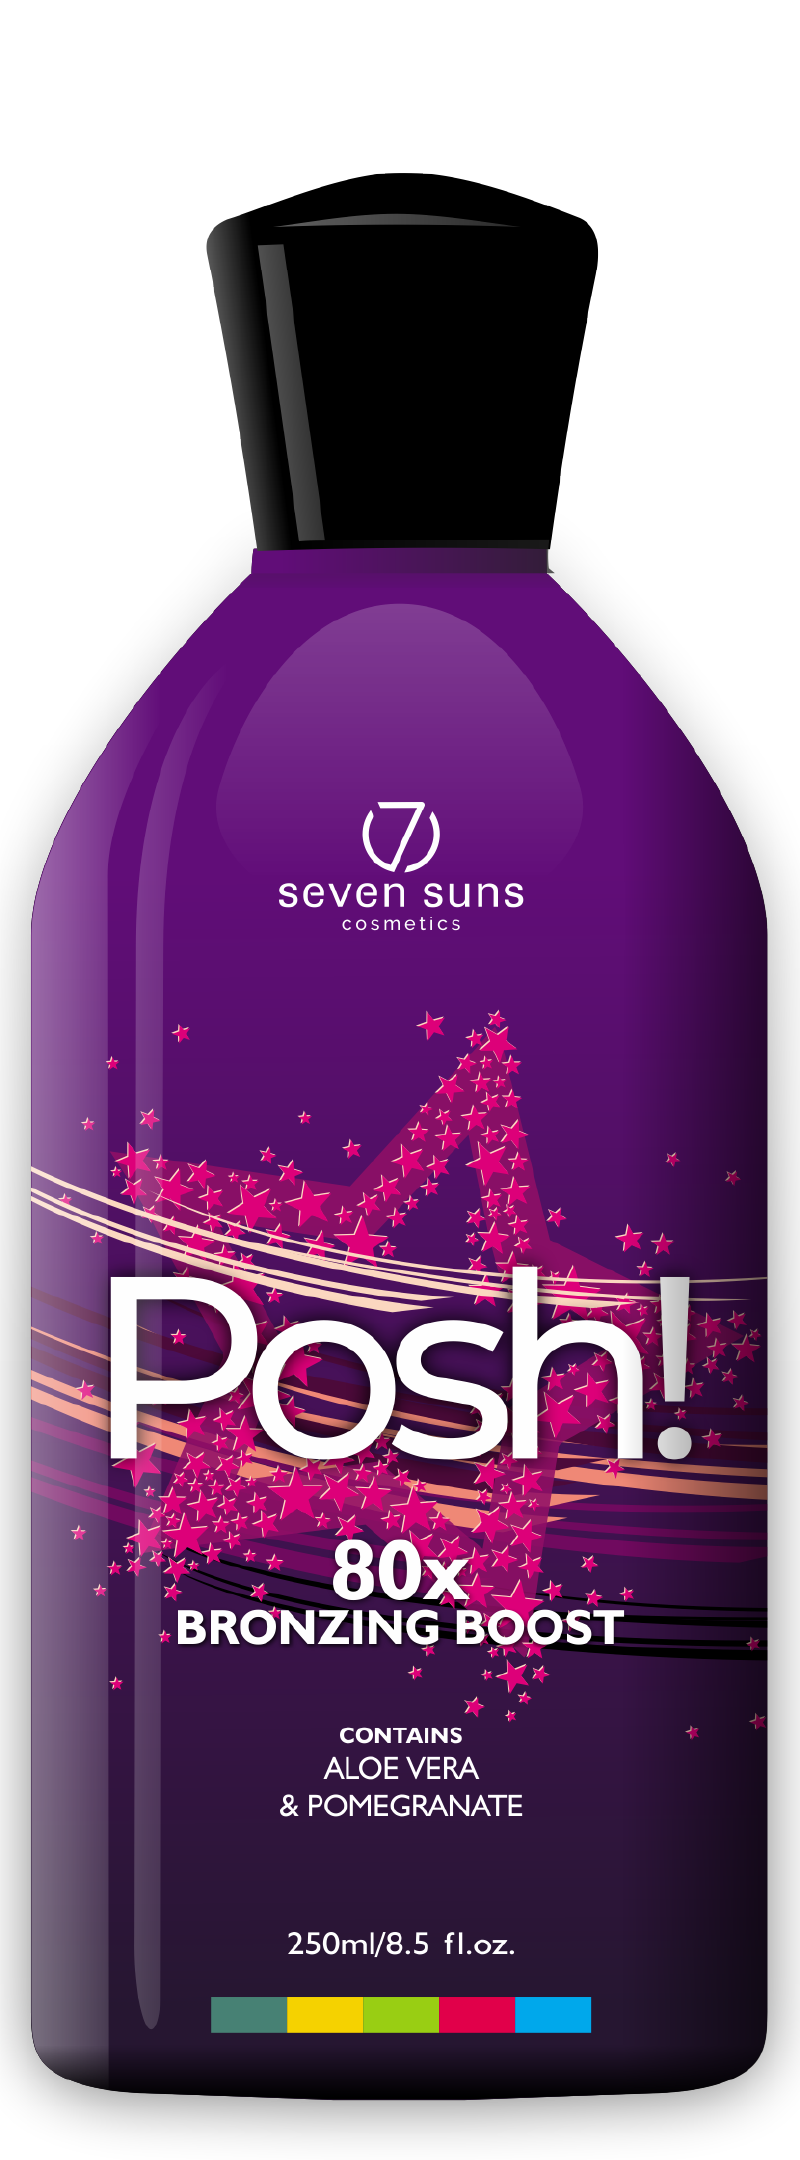 Posh! cosmetic bottle